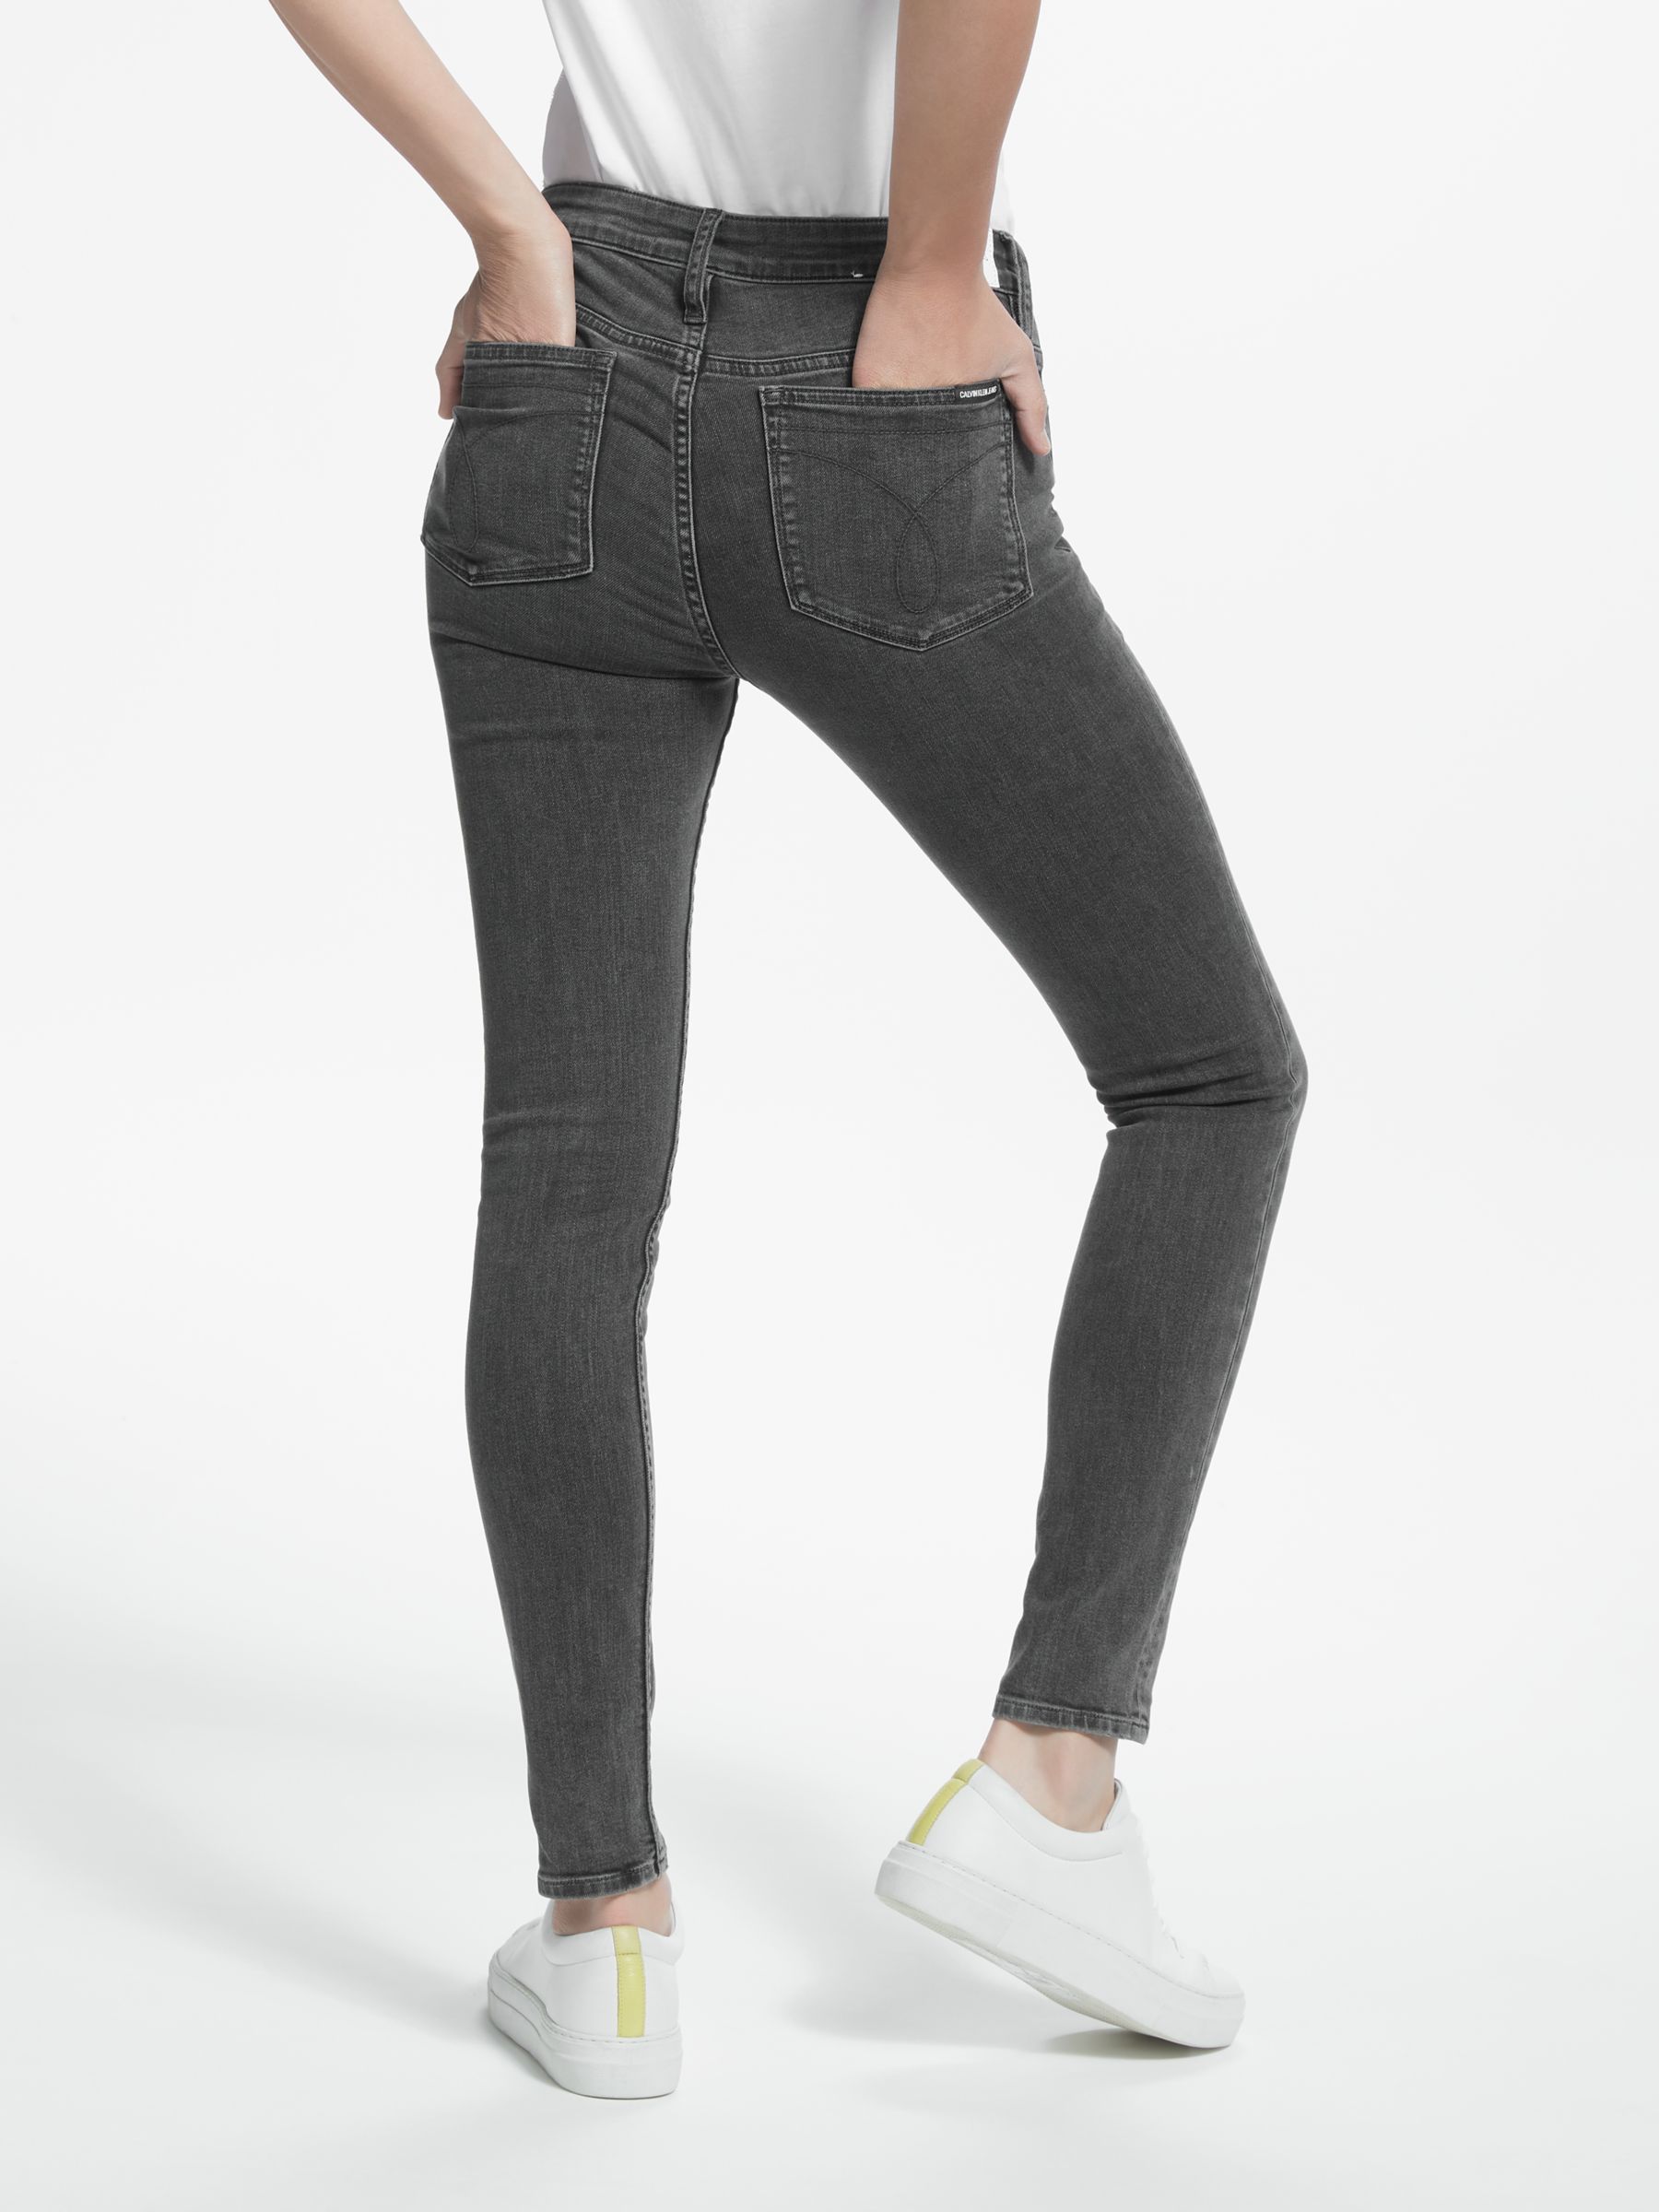 calvin klein jeans grey